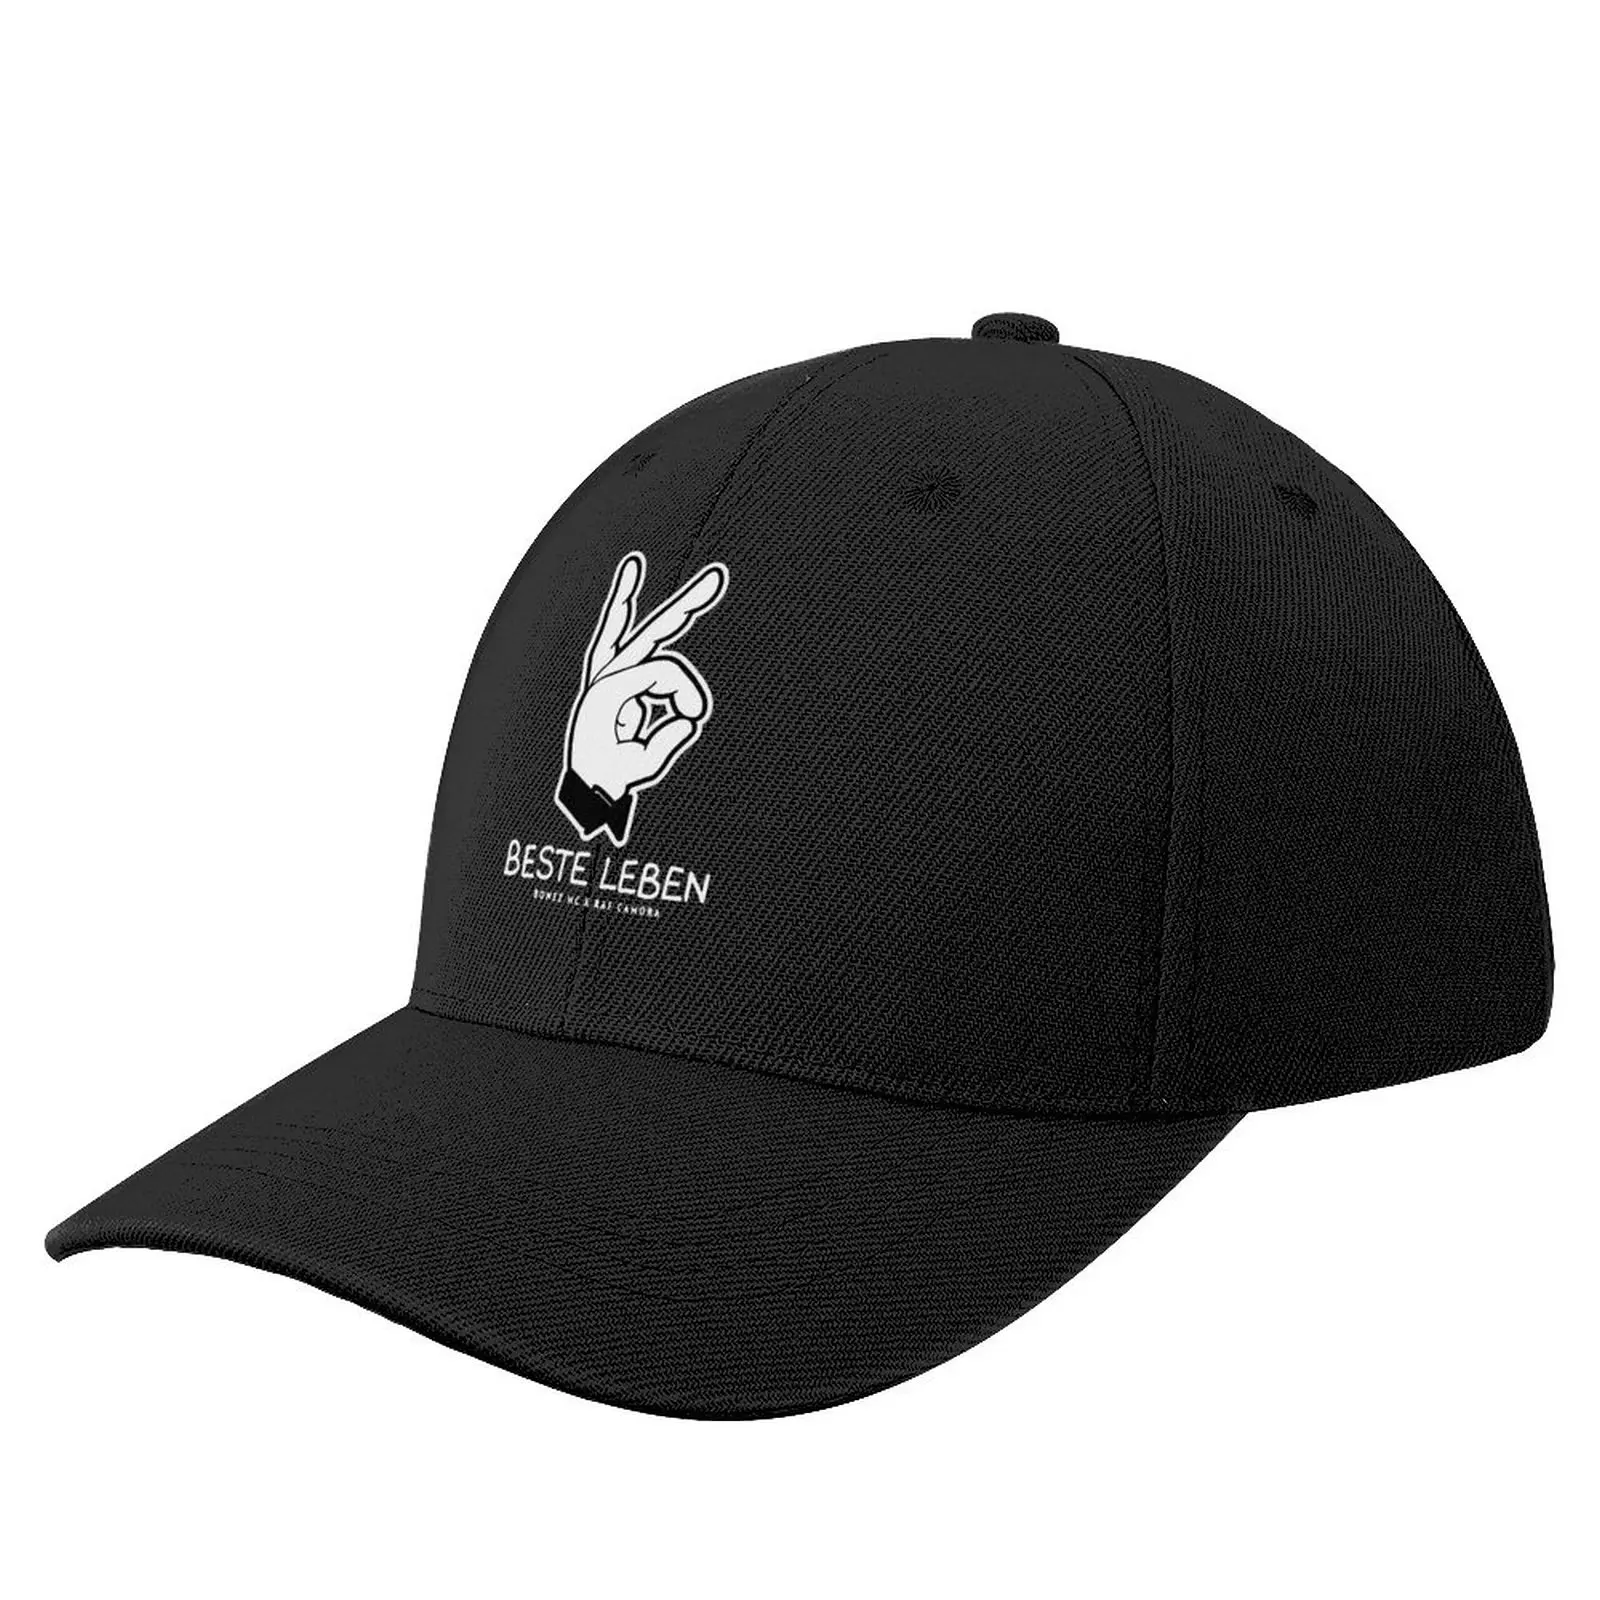 

Best seller beste leben merchandise essential t shirt Baseball Cap Golf Hat Man Visor Hat For Women Men's